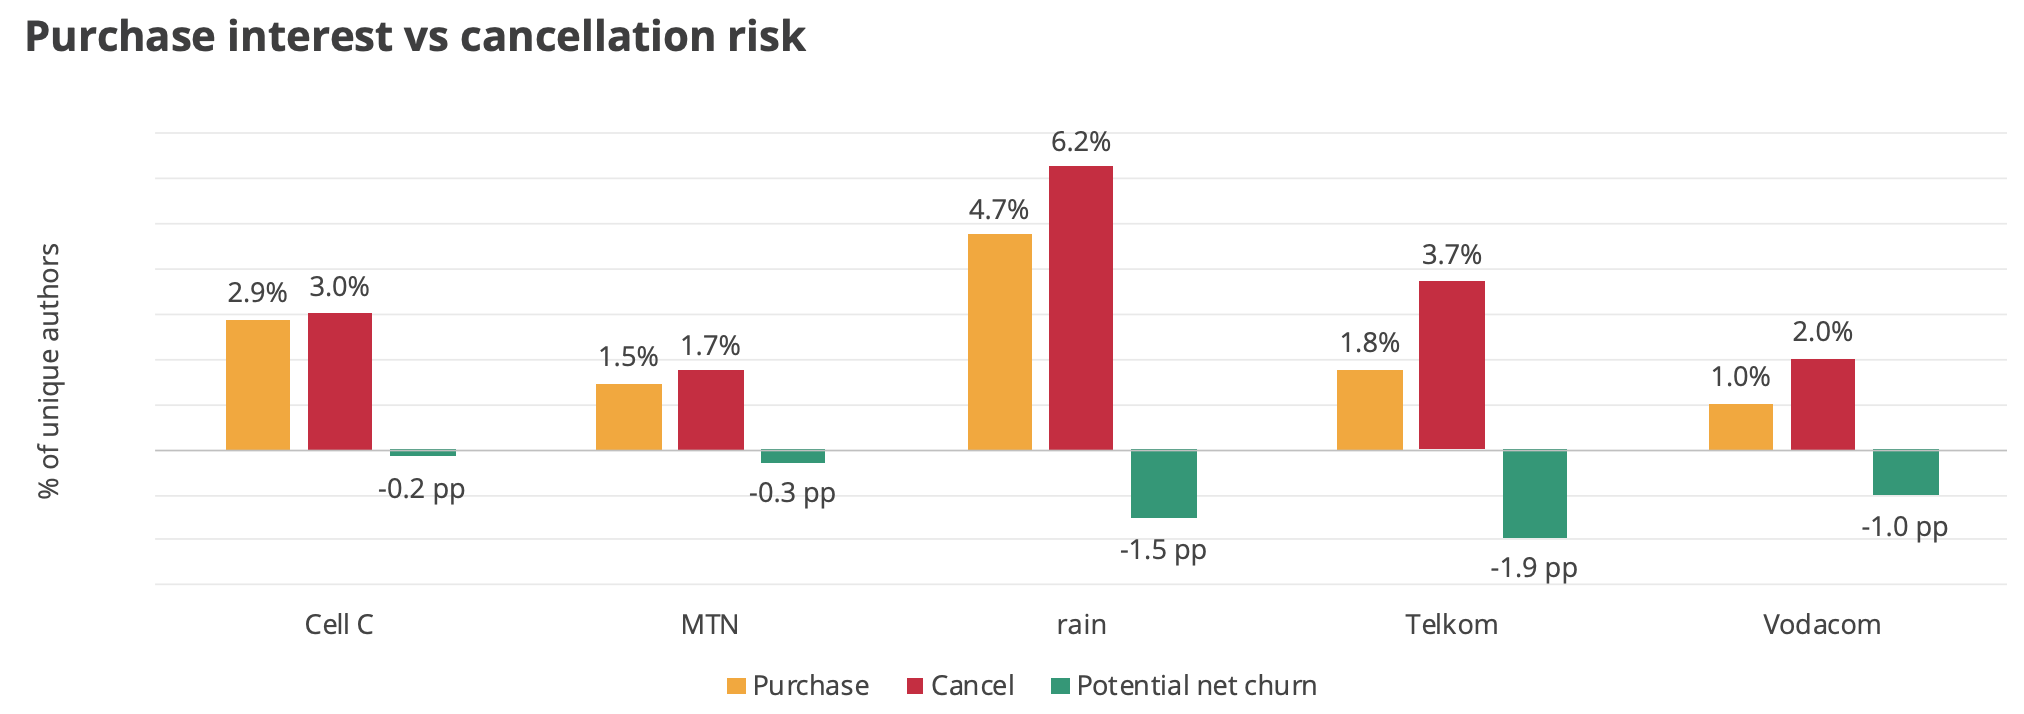 SA telco purchase vs cancellation risk